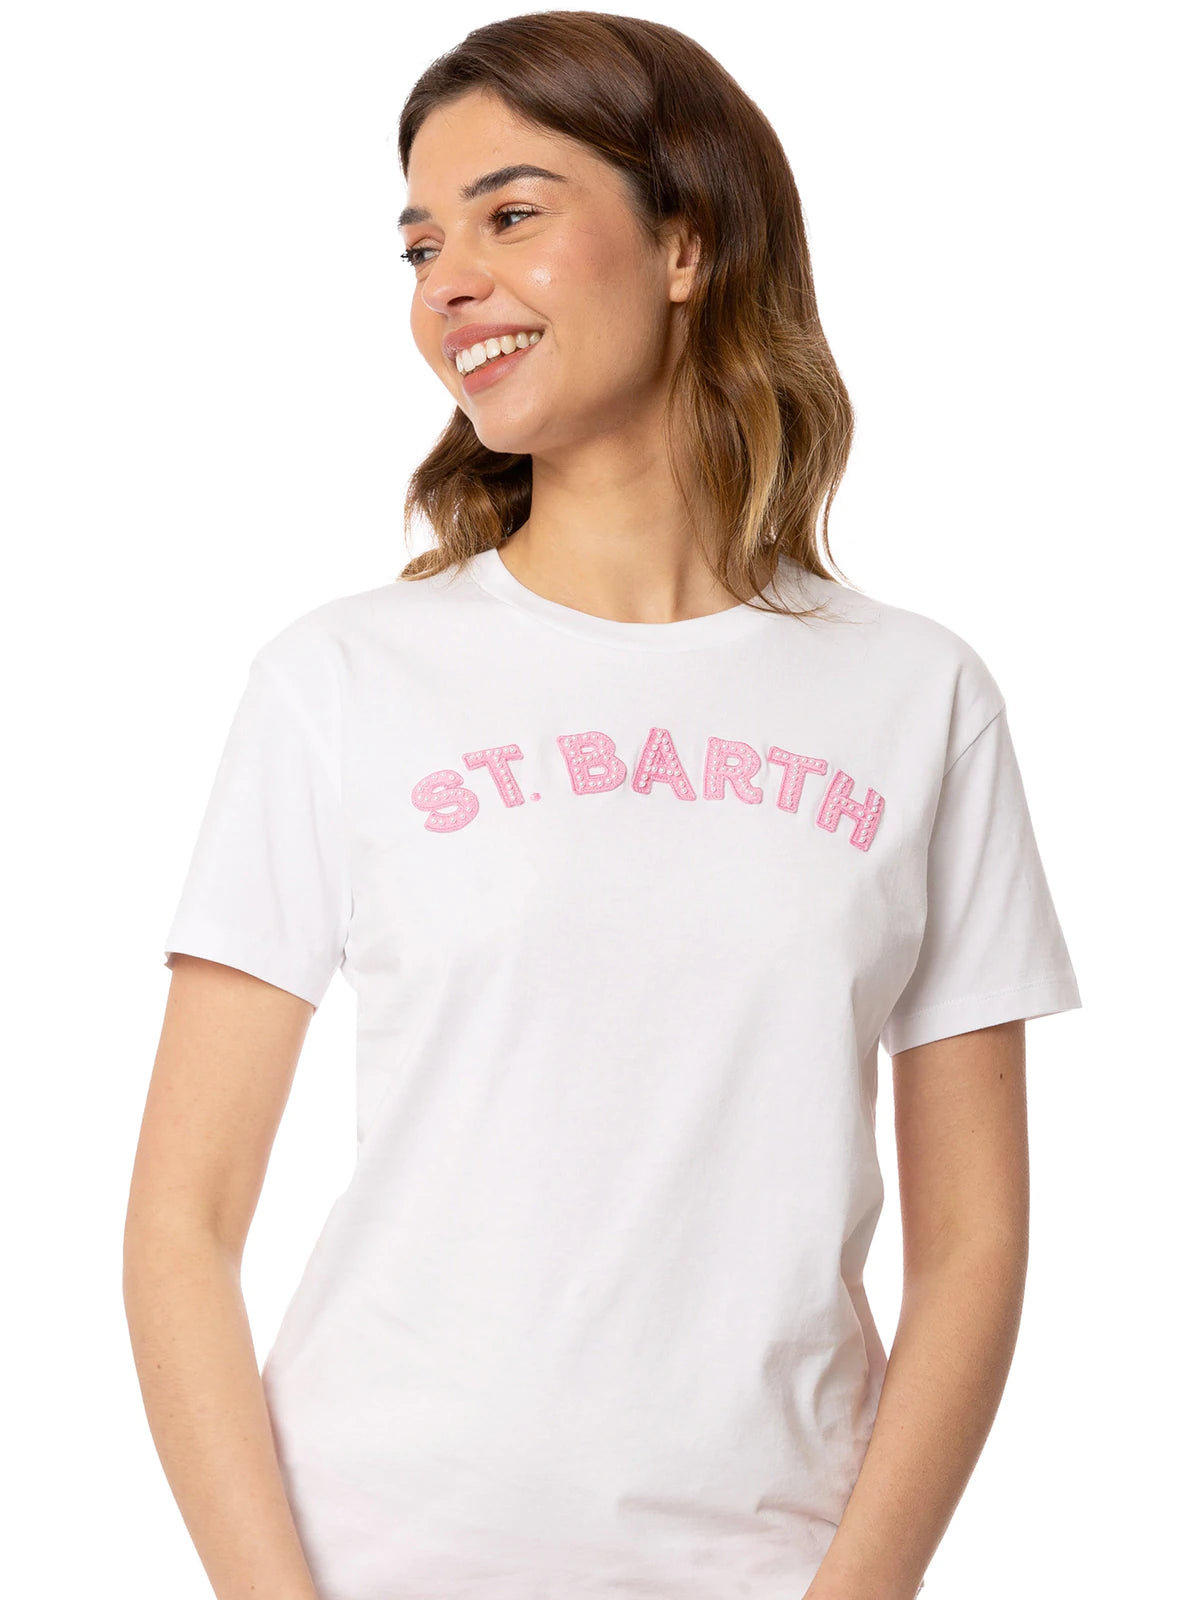 T-Shirt Mc2 Saint Barth con Ricamo / Bianco - Ideal Moda